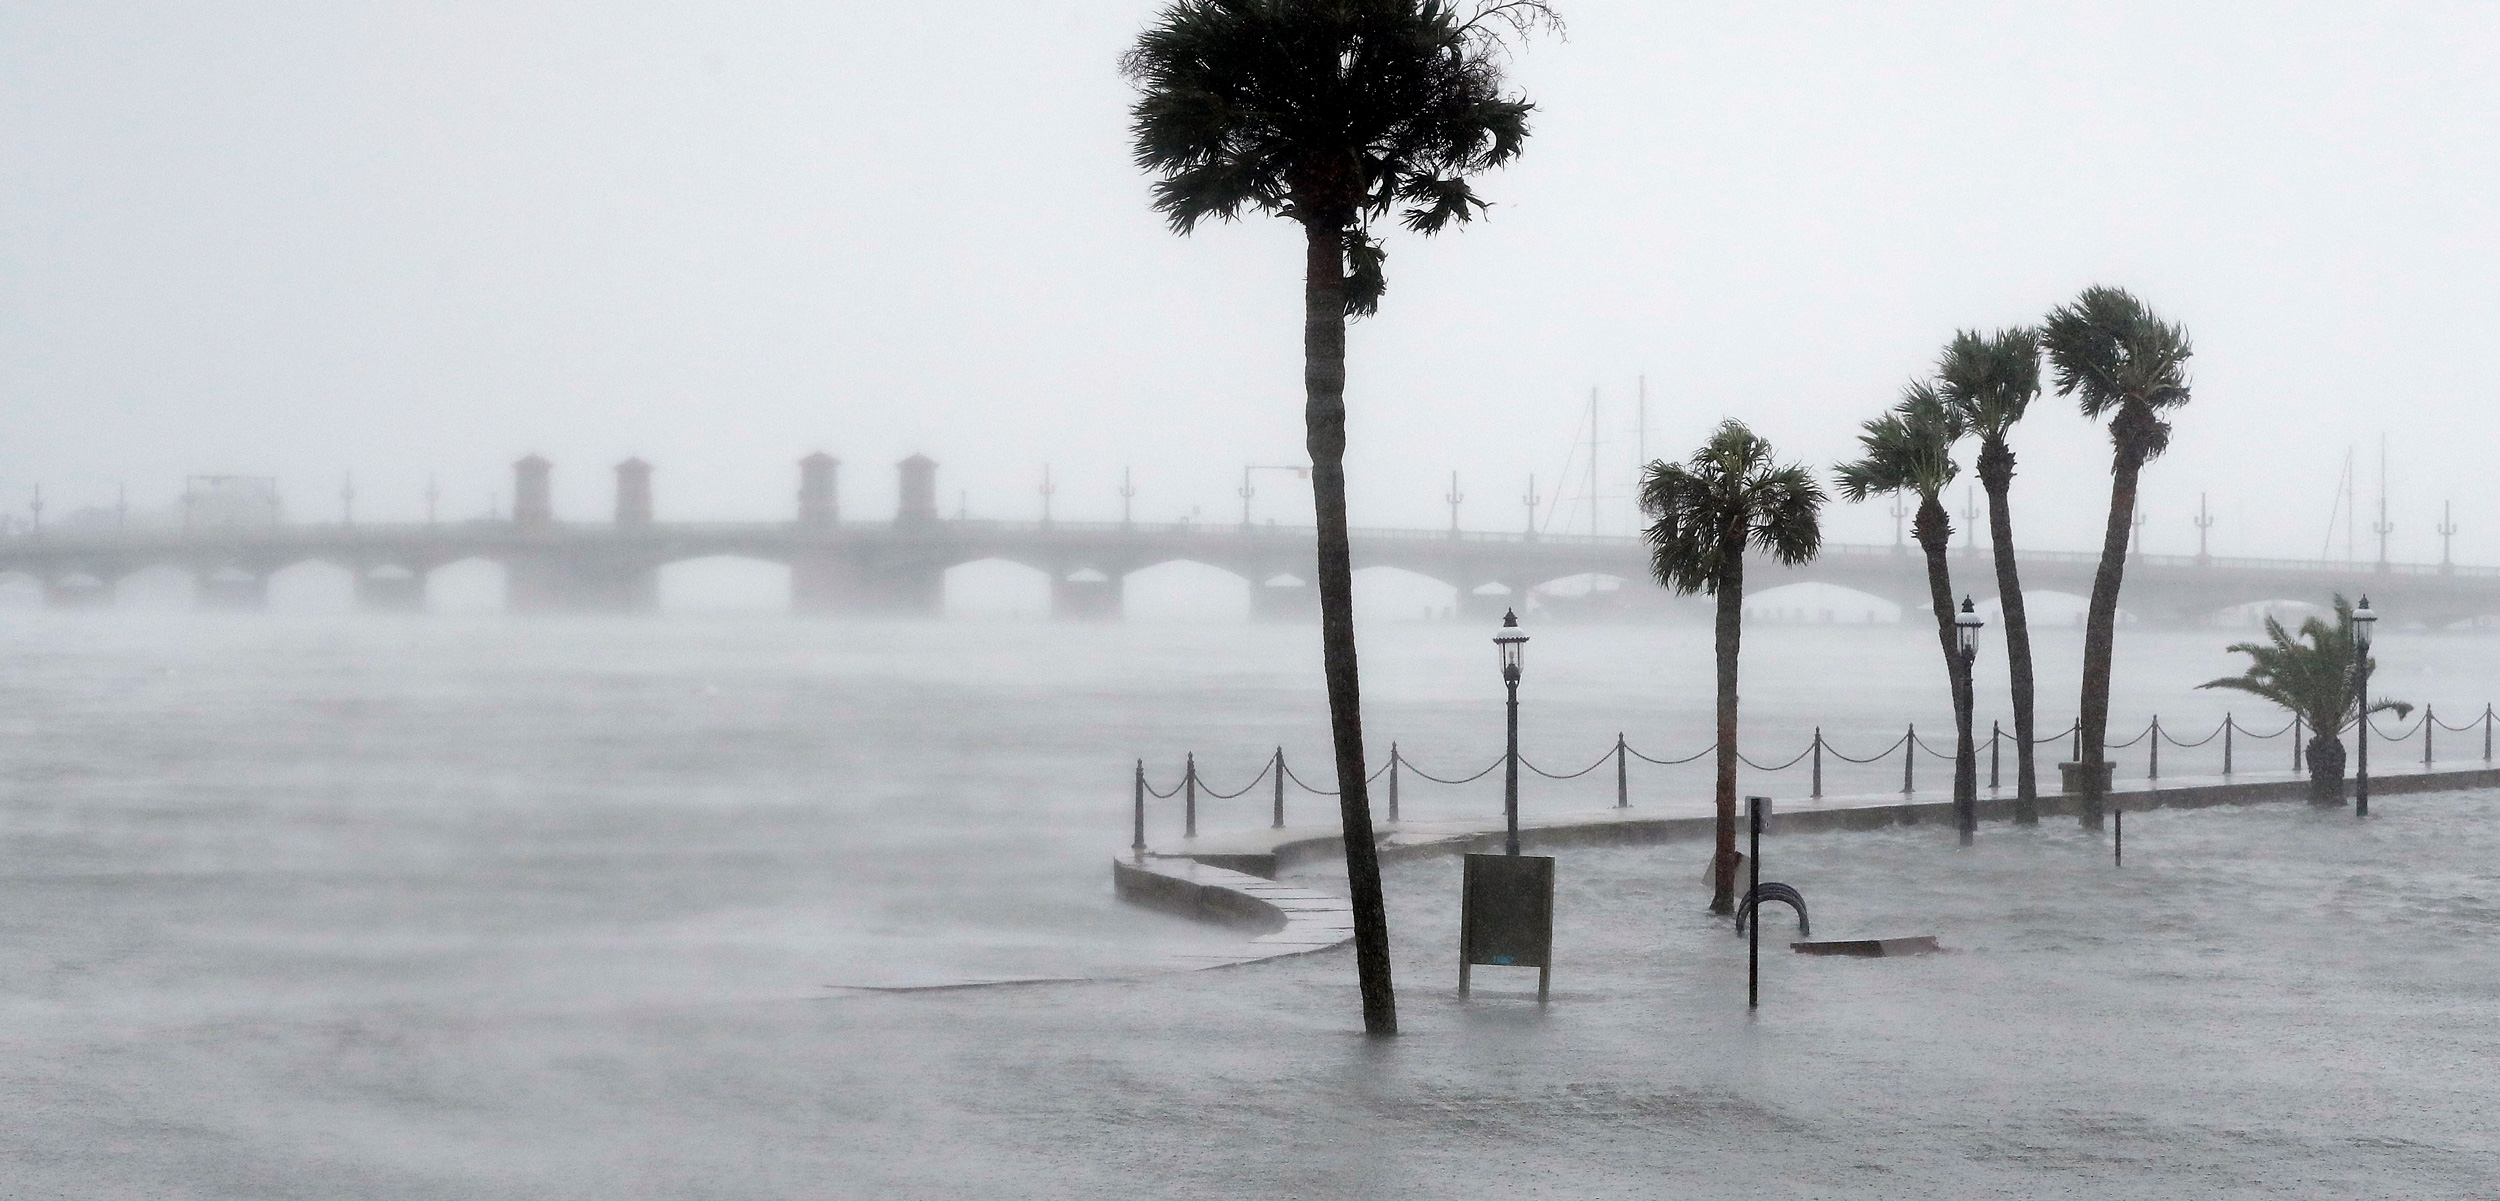 St. Augustine, Florida during Hurricane Matthew